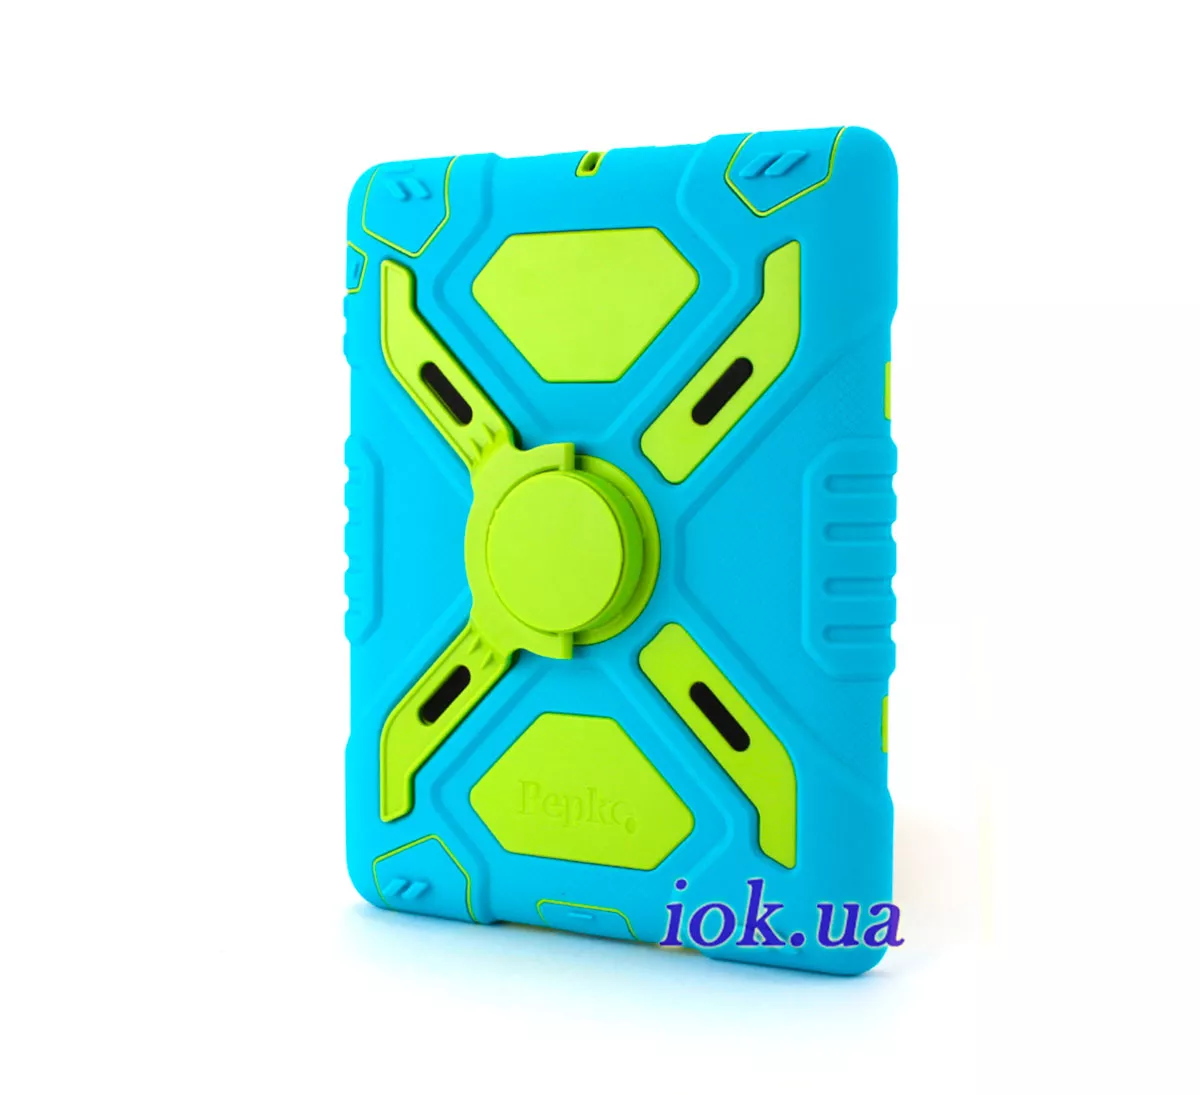 Противоударный чехол для iPad Air - Pepkoo, голубой с зеленым